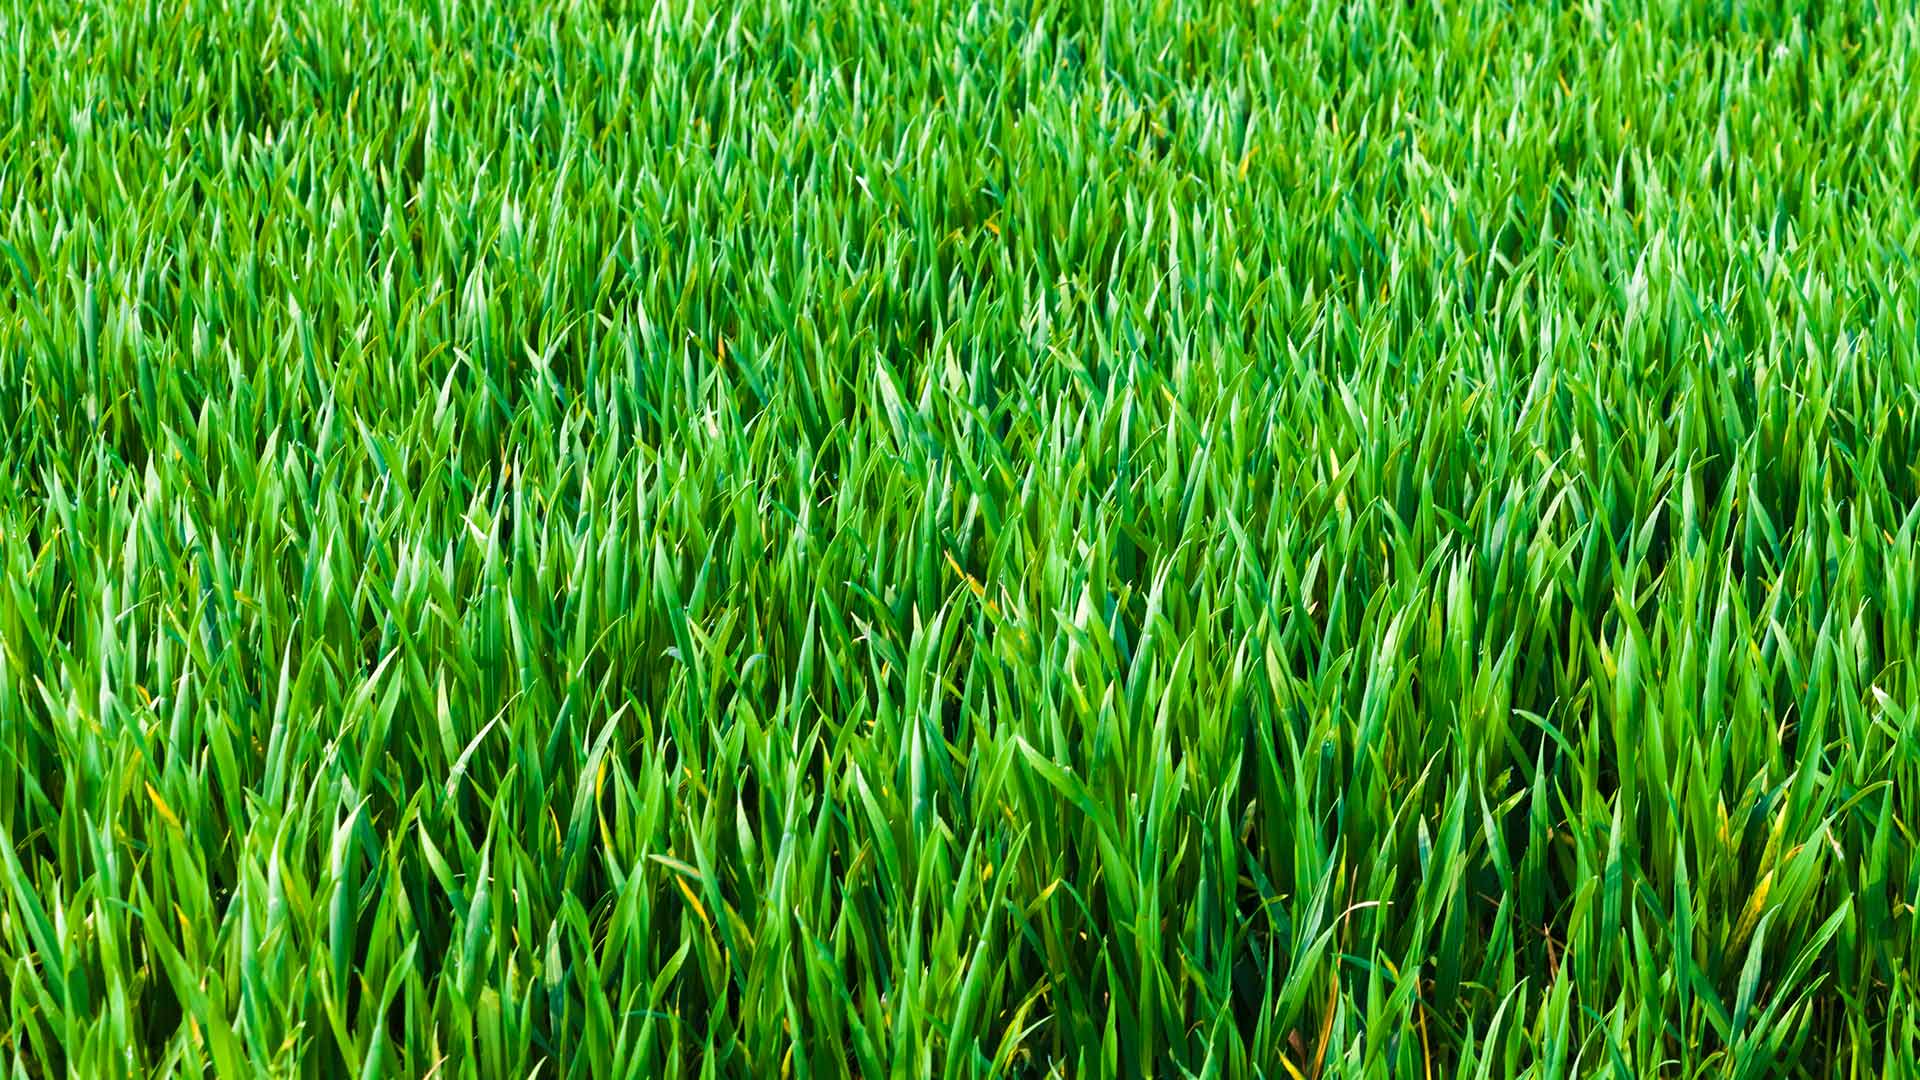 Healthy grass blades in a lawn in Schwenksville, PA.